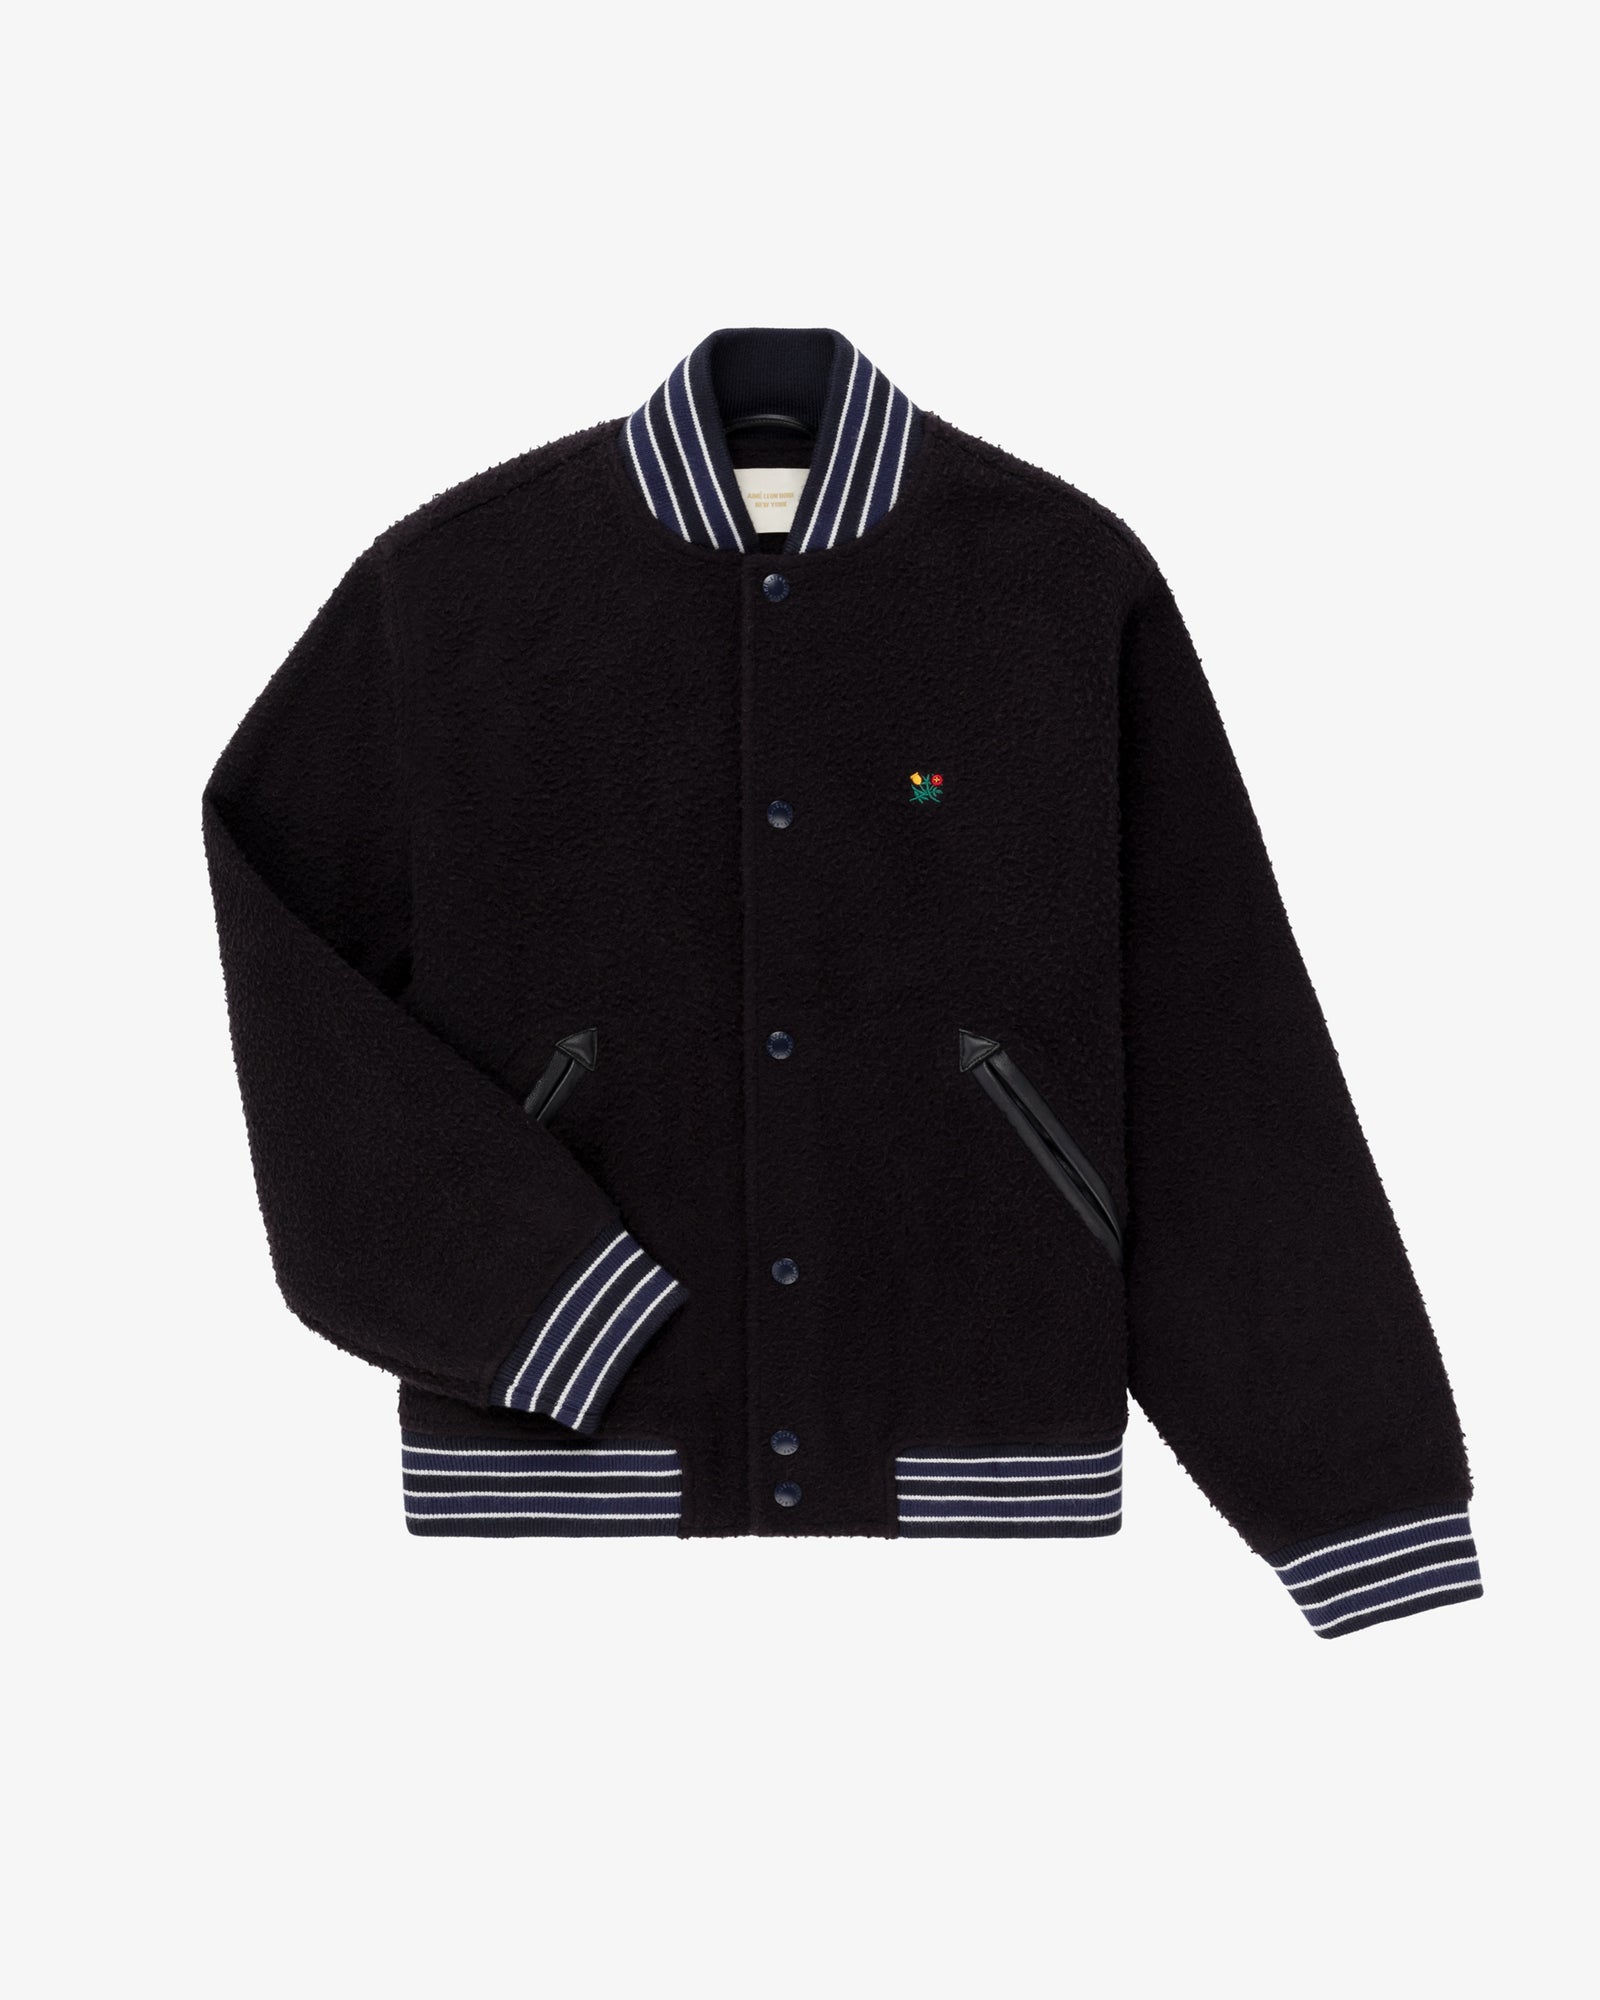 Casentino Crest Varsity Jacket